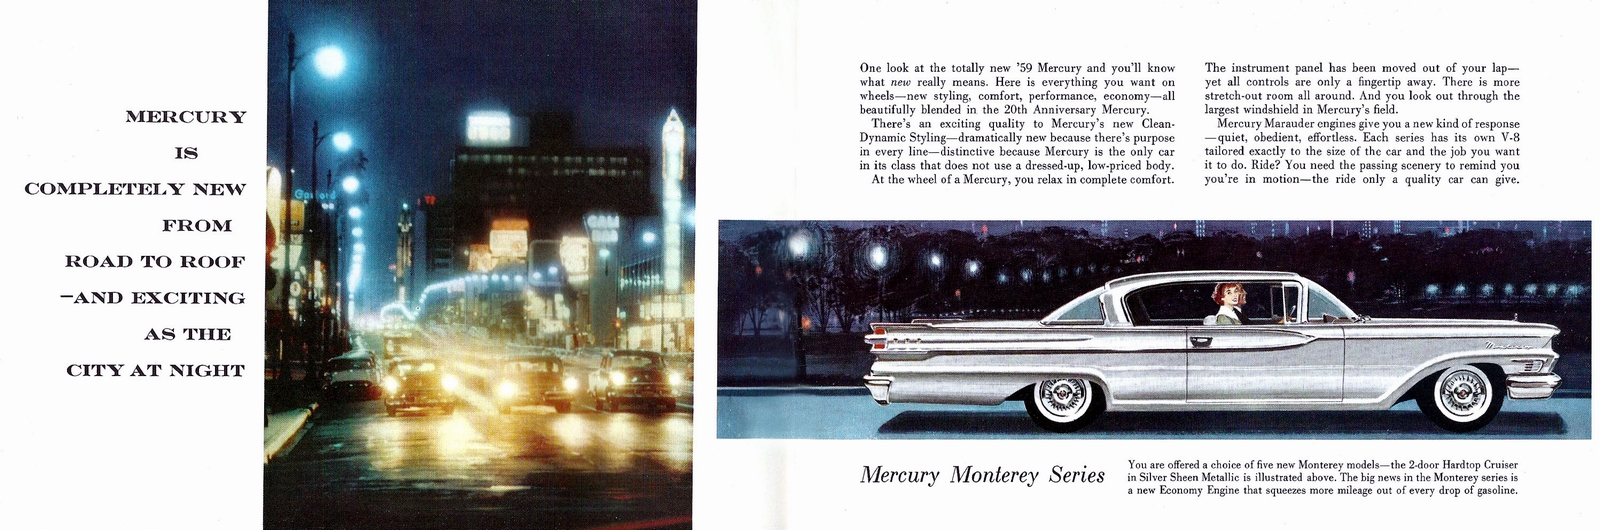 n_1959 Mercury-02-03.jpg